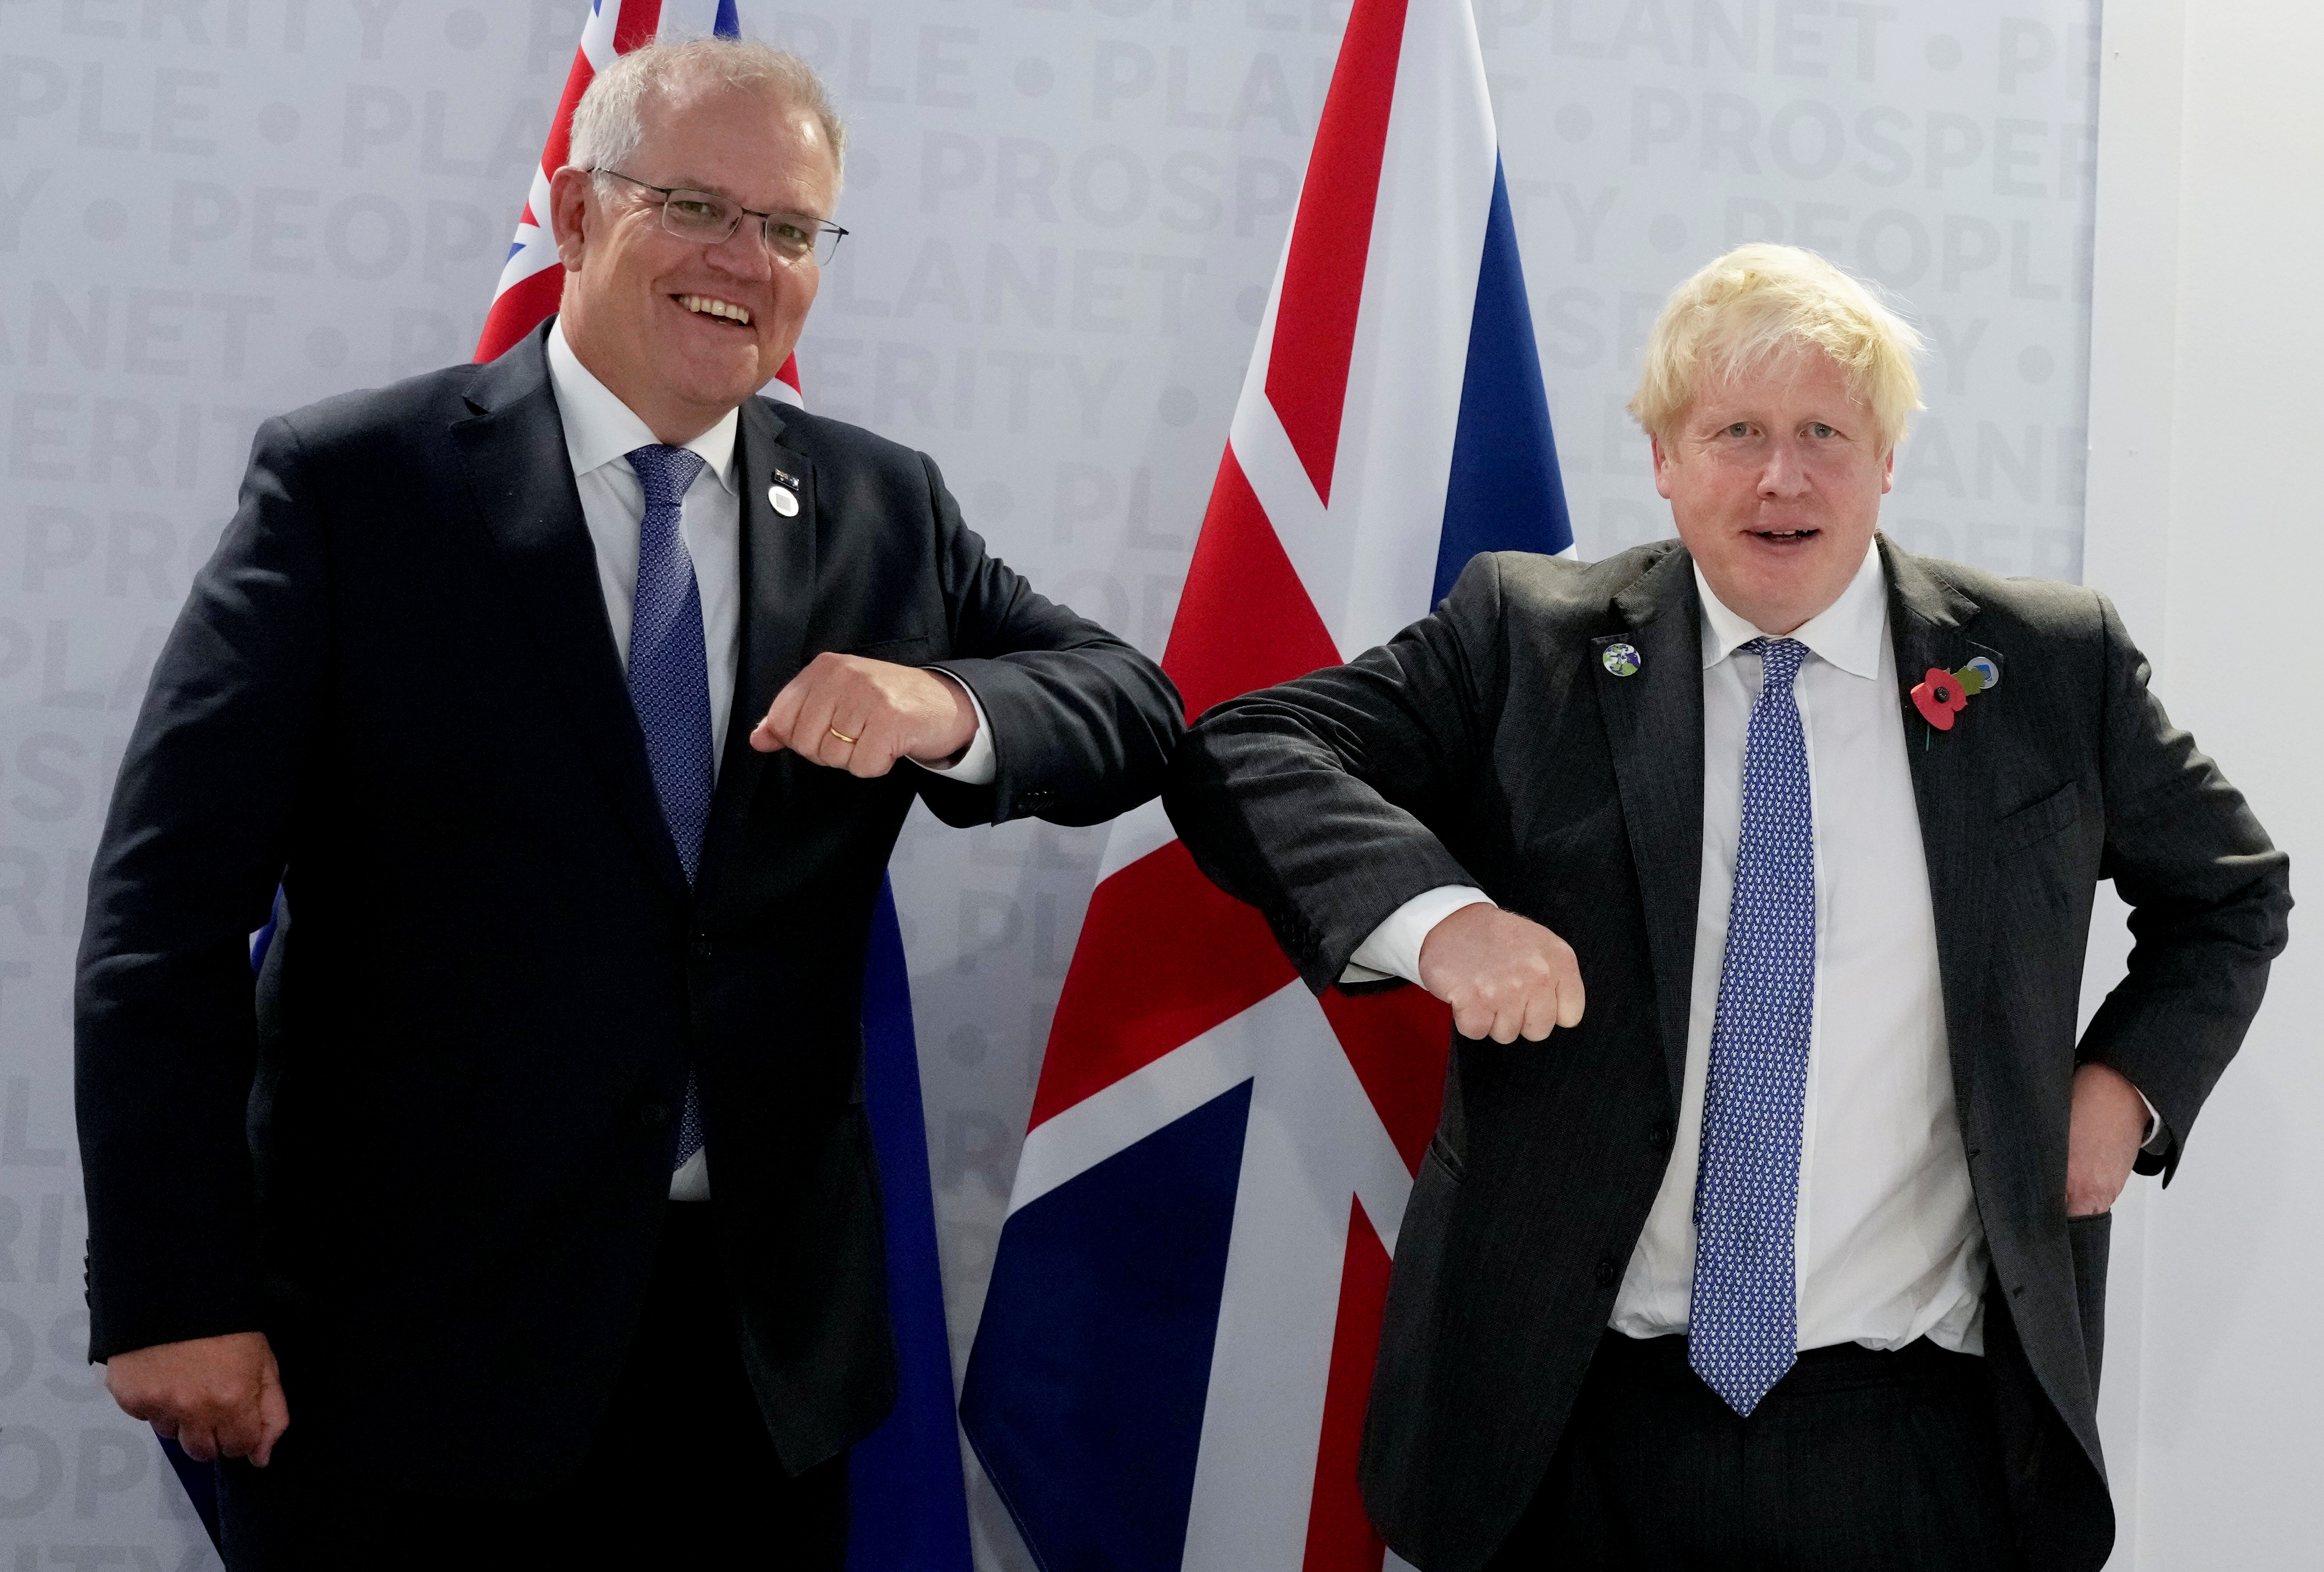 El primer ministro de Gran Bretaña, Boris Johnson, posa con su homólogo de Australia, Scott Morrison, antes de una reunión bilateral al margen de la cumbre del G20 en Roma, Italia, el 30 de octubre de 2021 (Kirsty Wigglesworth/Pool vía REUTERS)